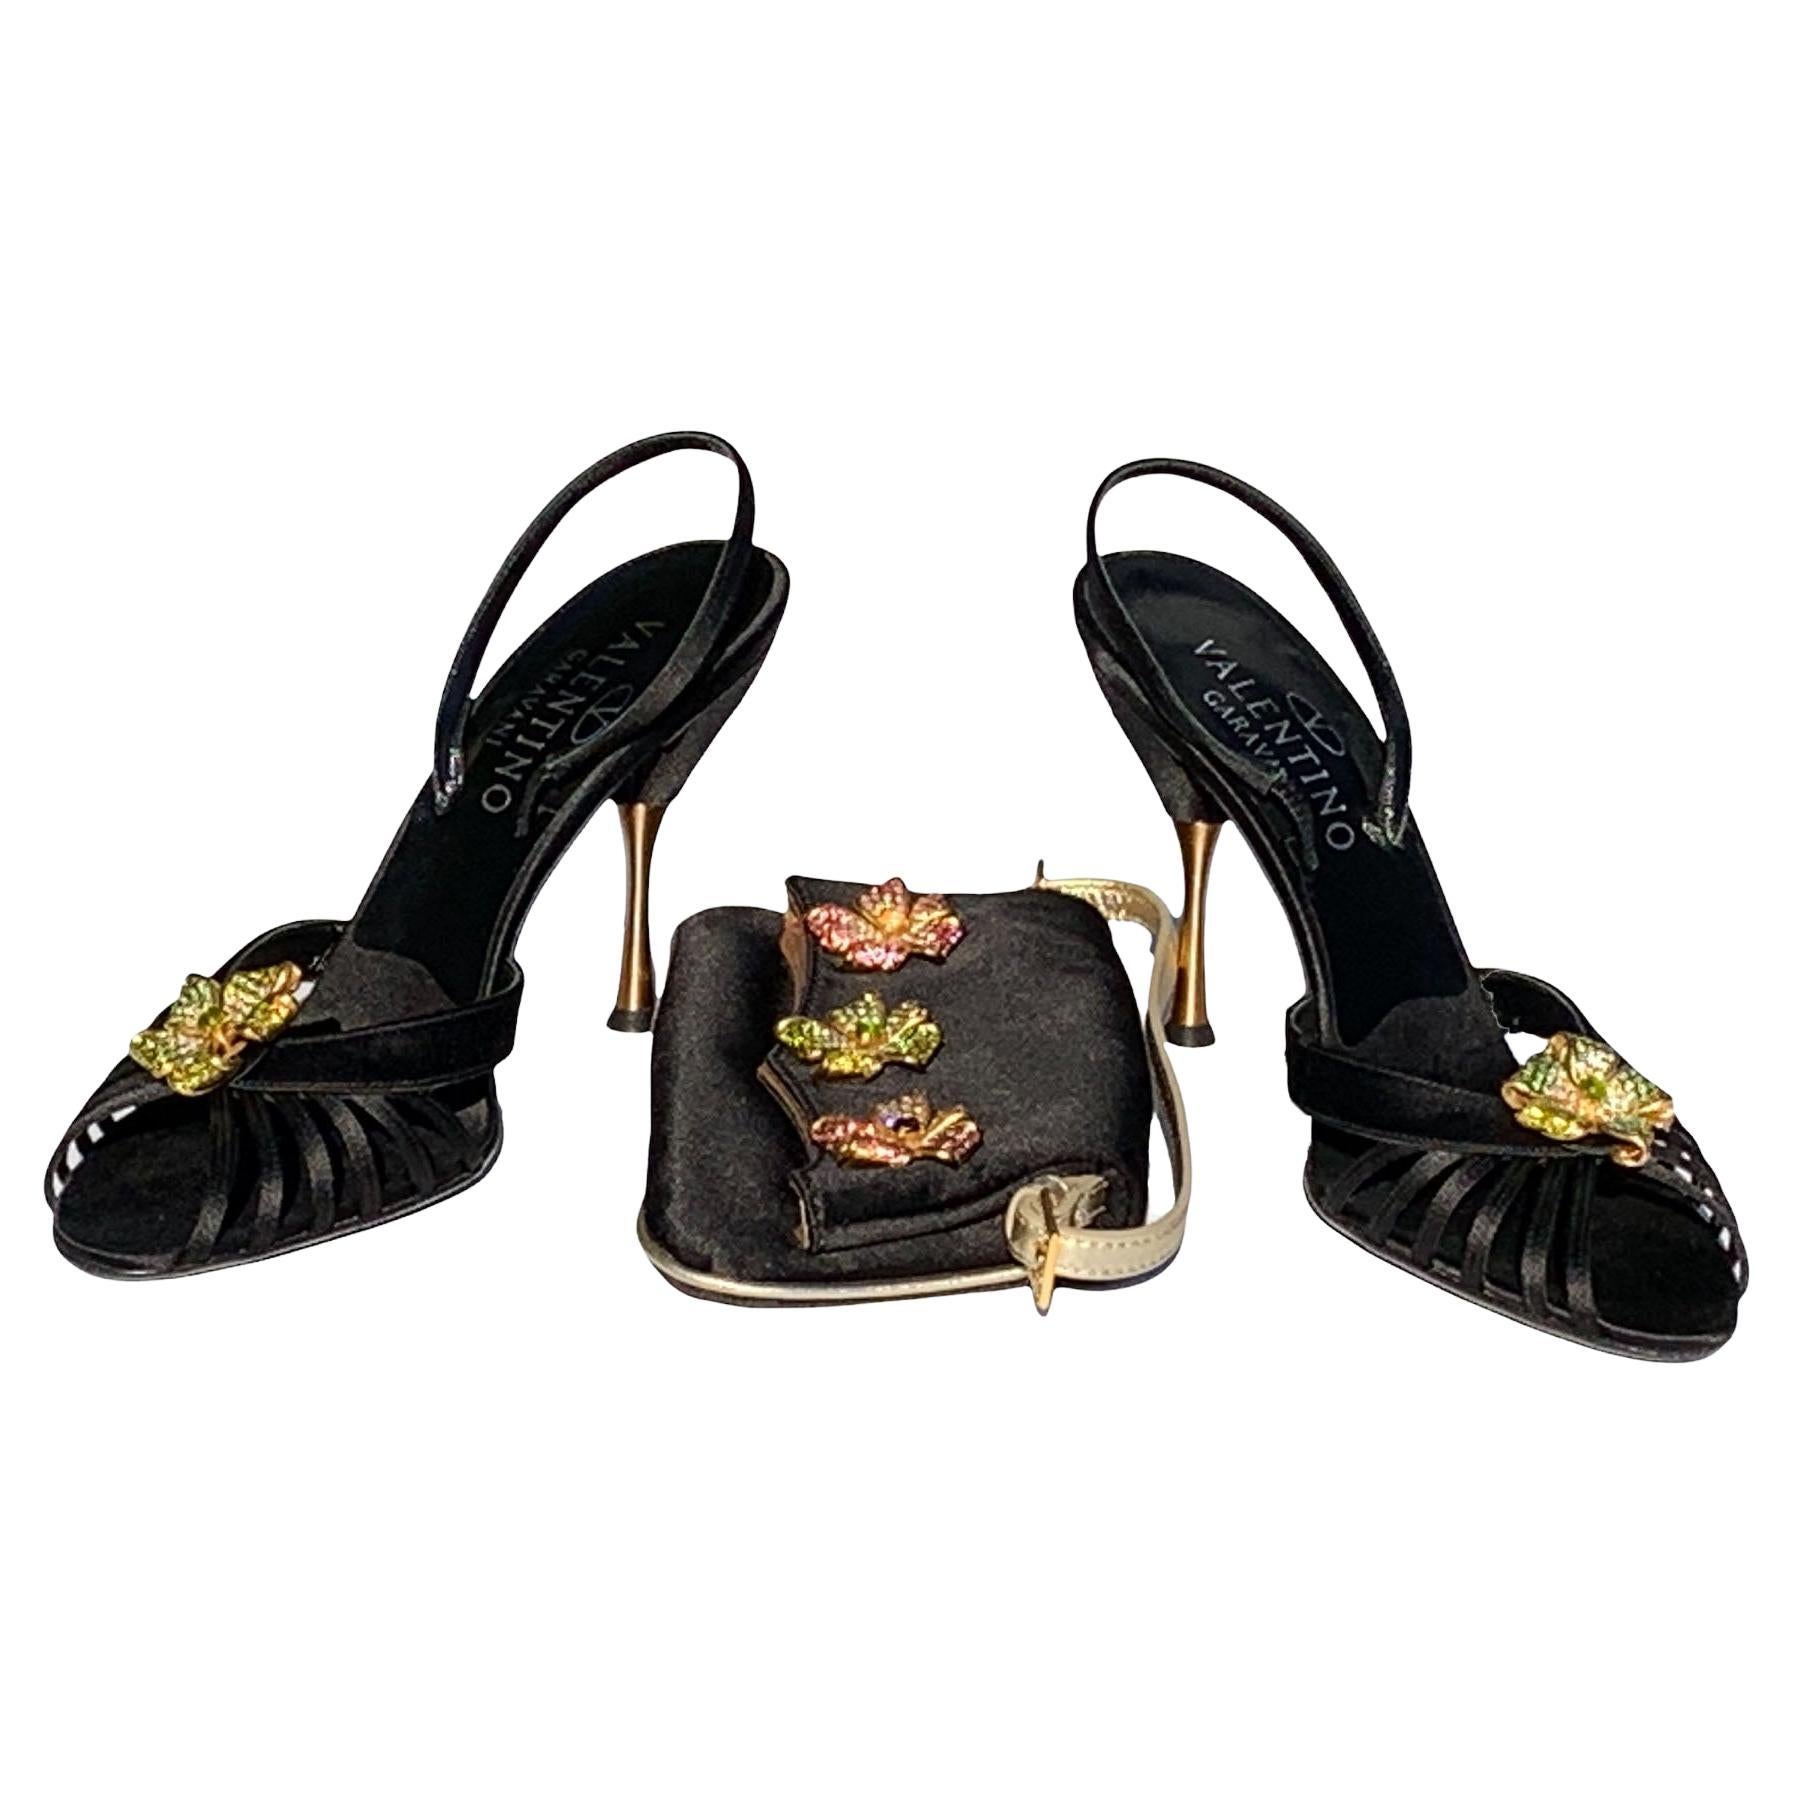 Neu Valentino Garavani 2006 Schwarze Schuhe mit Juwelen Sandalen 38,5 + passende Clutch 